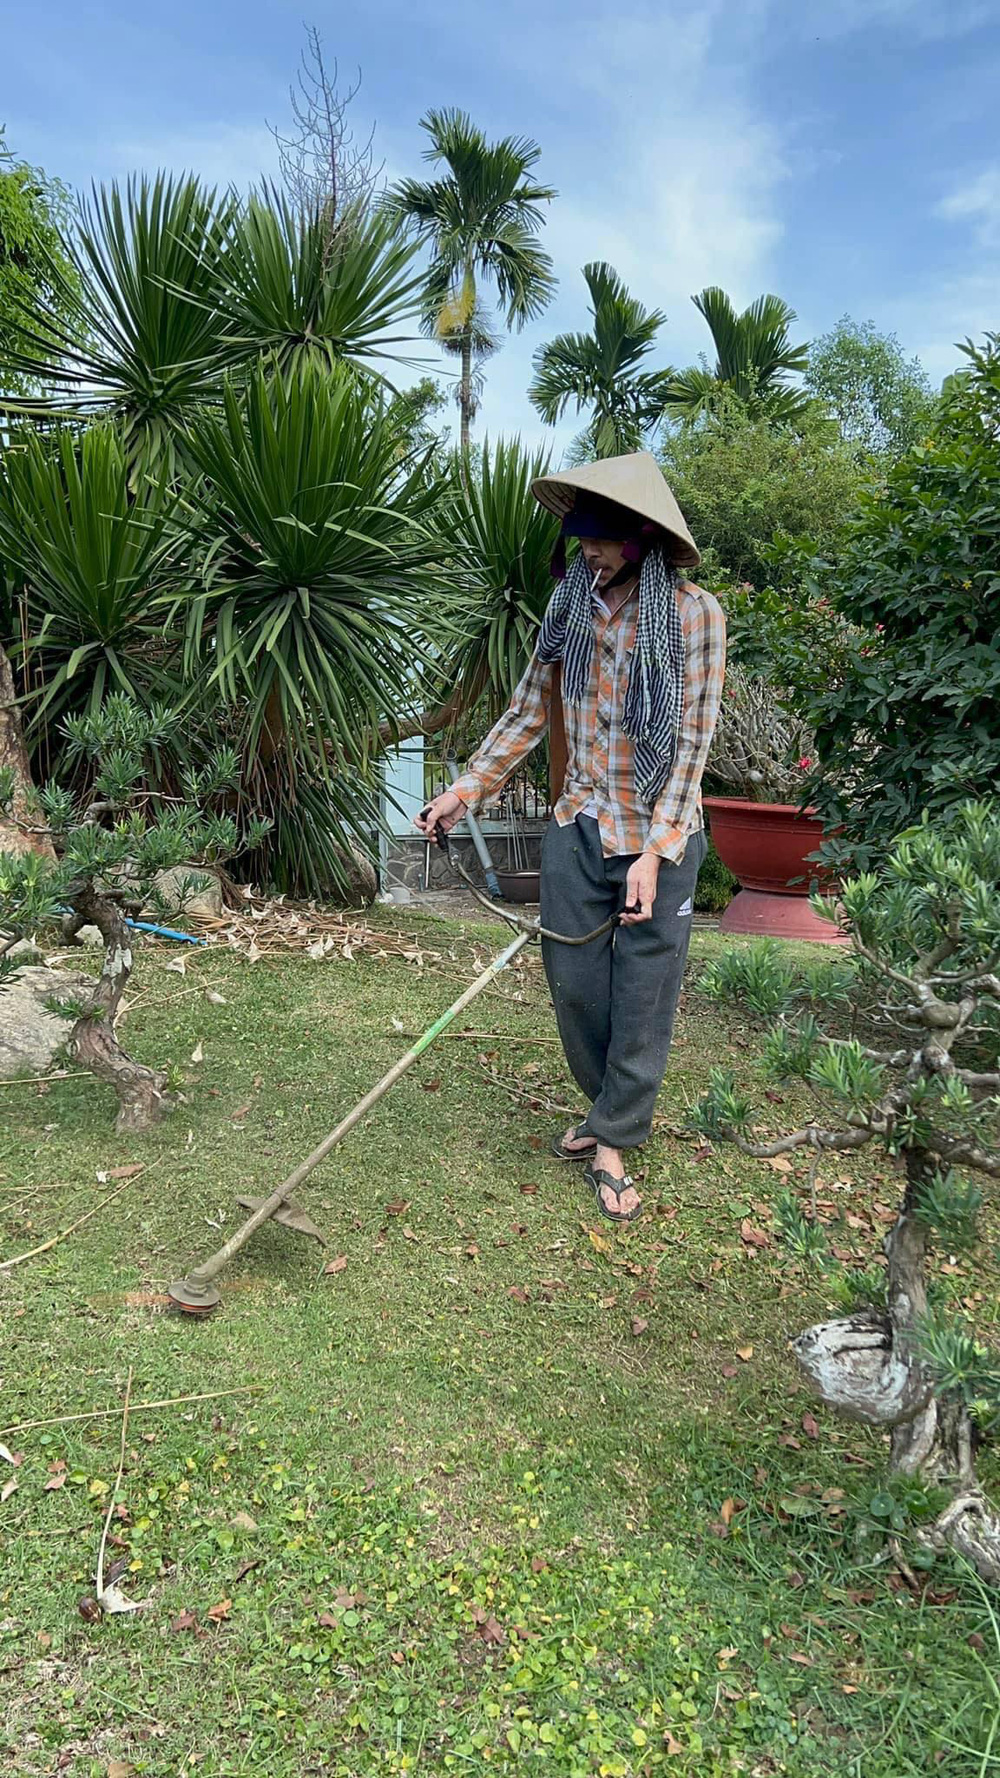 Hình ảnh mới nhất của Hoài Linh: Gầy đen, để râu dài, chăm chỉ làm vườn